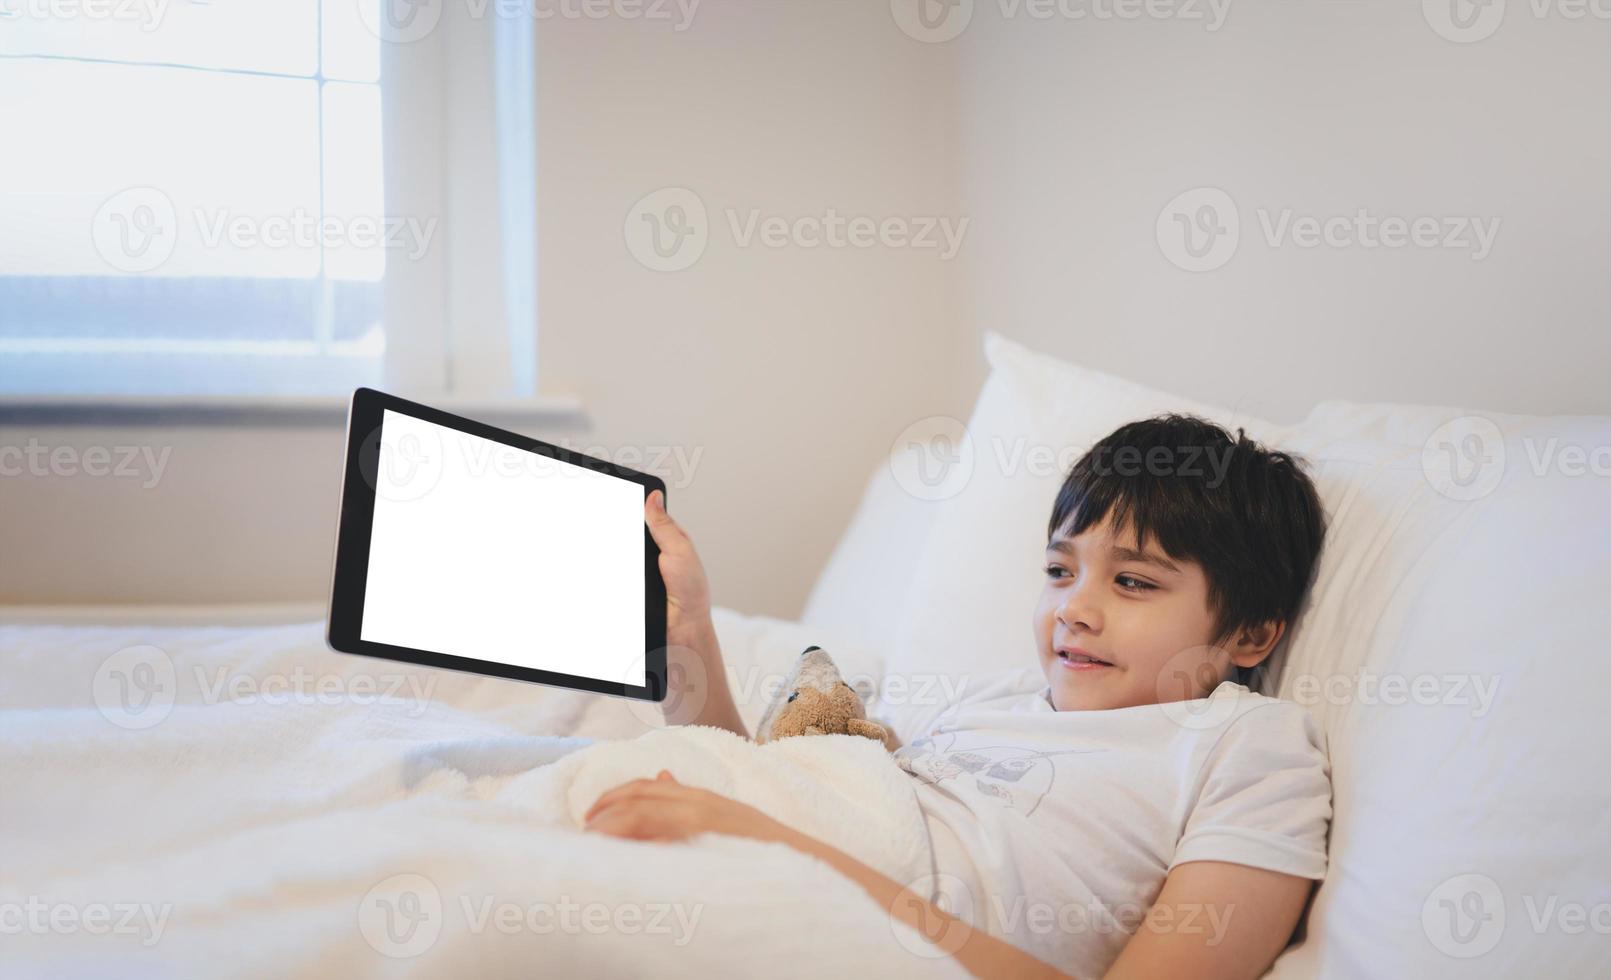 criança feliz deitada na cama segurando o tablet assistindo desenhos animados e conversando com amigos no teclado digital, menino bonitinho mostrando o touch pad, criança relaxando de manhã antes de ir para a escola foto